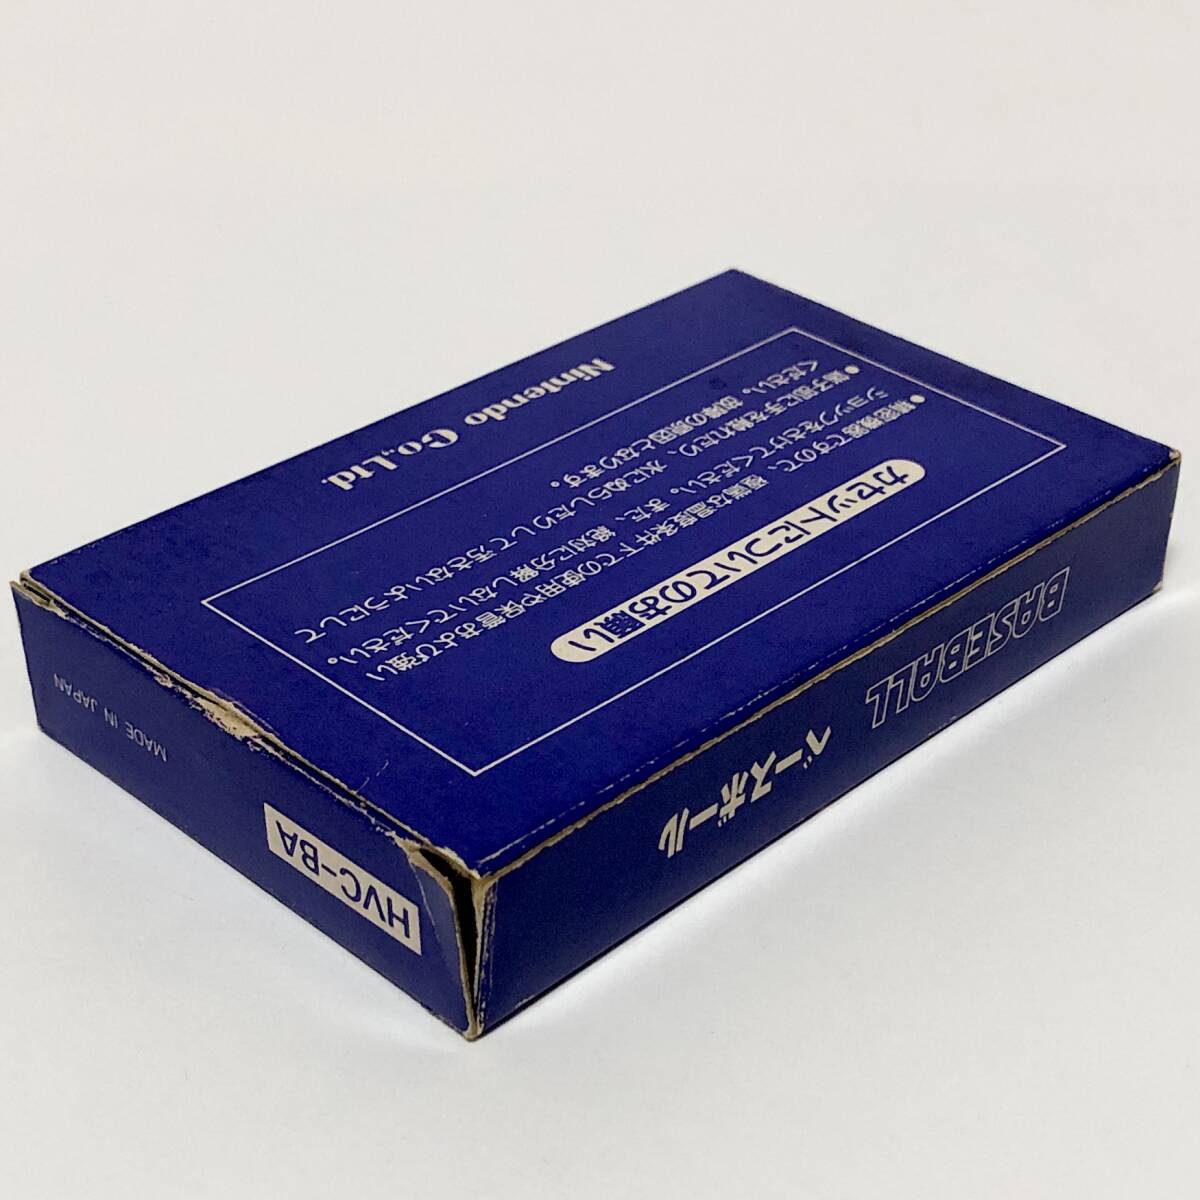 ファミコン ベースボール 小箱版 箱説付き 痛みあり 操作法早見図付き Nintendo Famicom Baseball Small Box Version CIB Testedの画像6